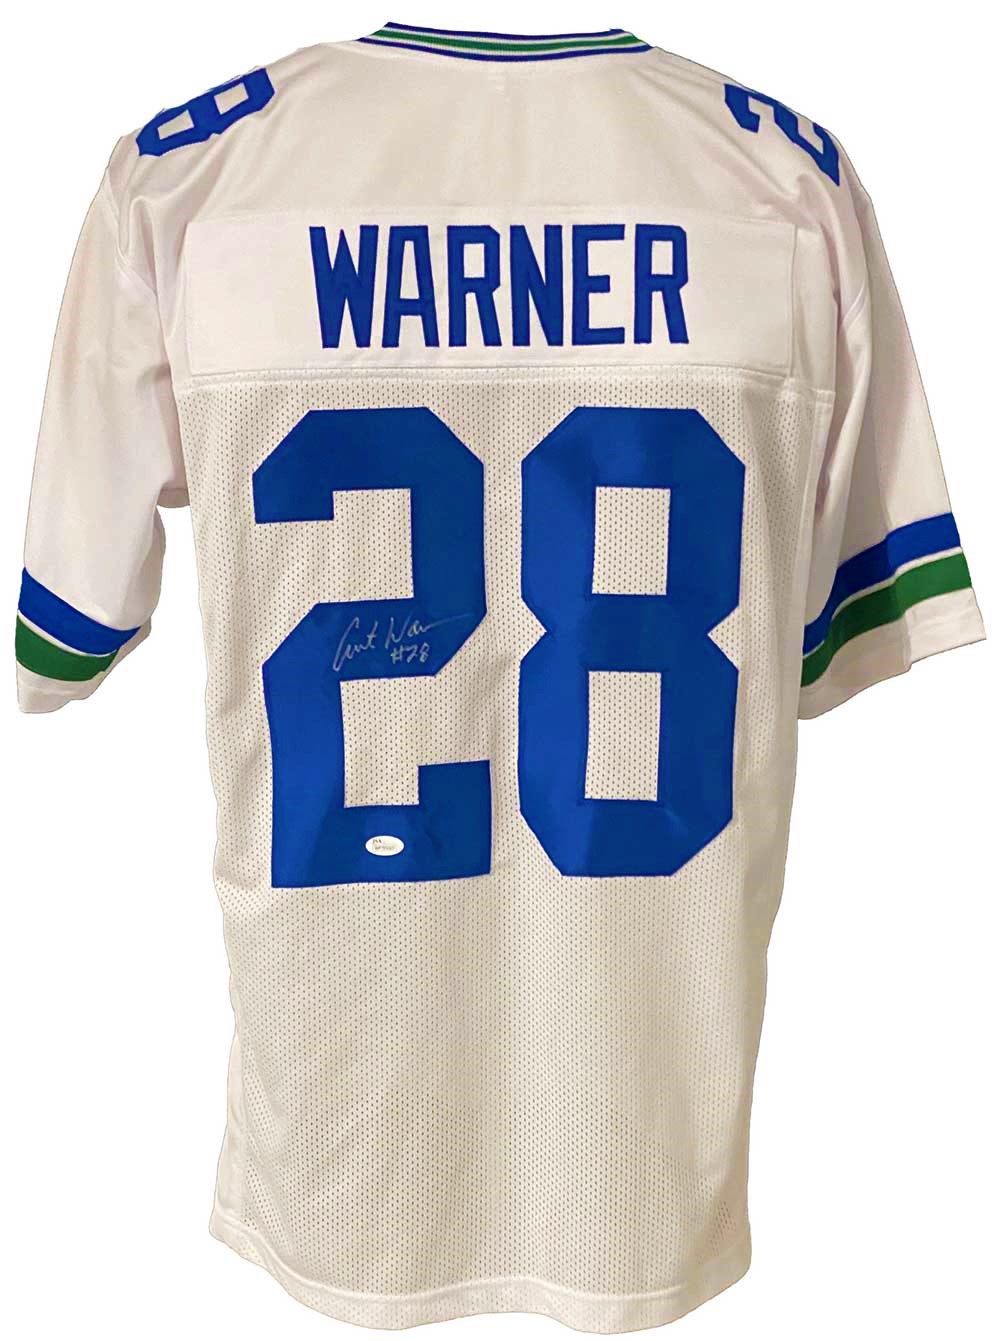 Seattle Seahawks Curt Warner Signed Pro Style Jersey JSA